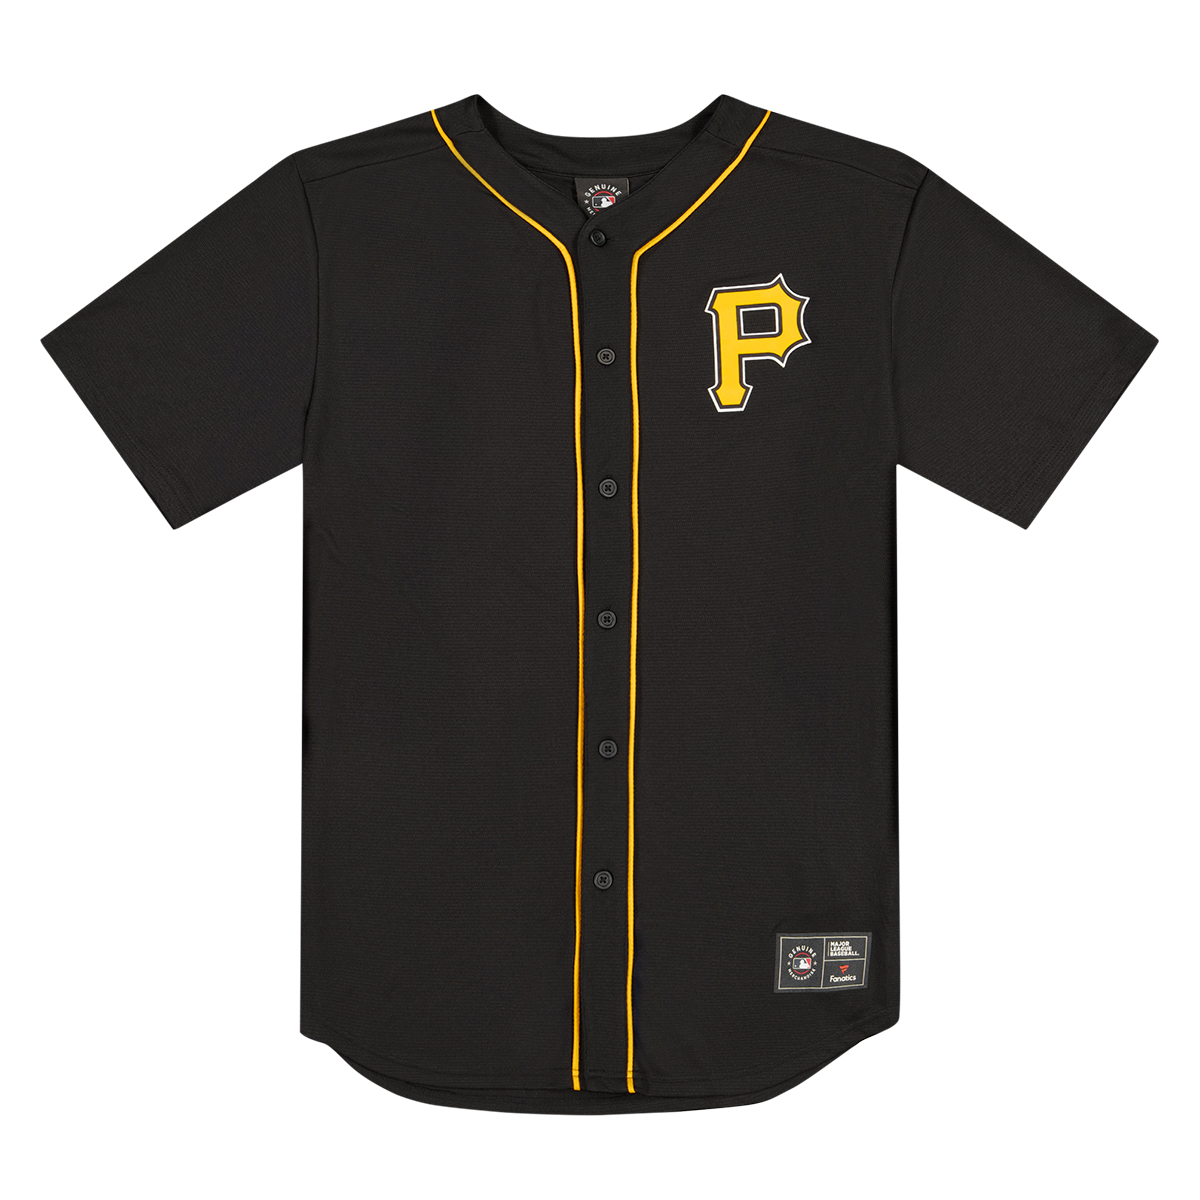 Image of Fanatics MLB Pittsburgh Pirates Foundation Baseball Jersey, Black/yellow Gold